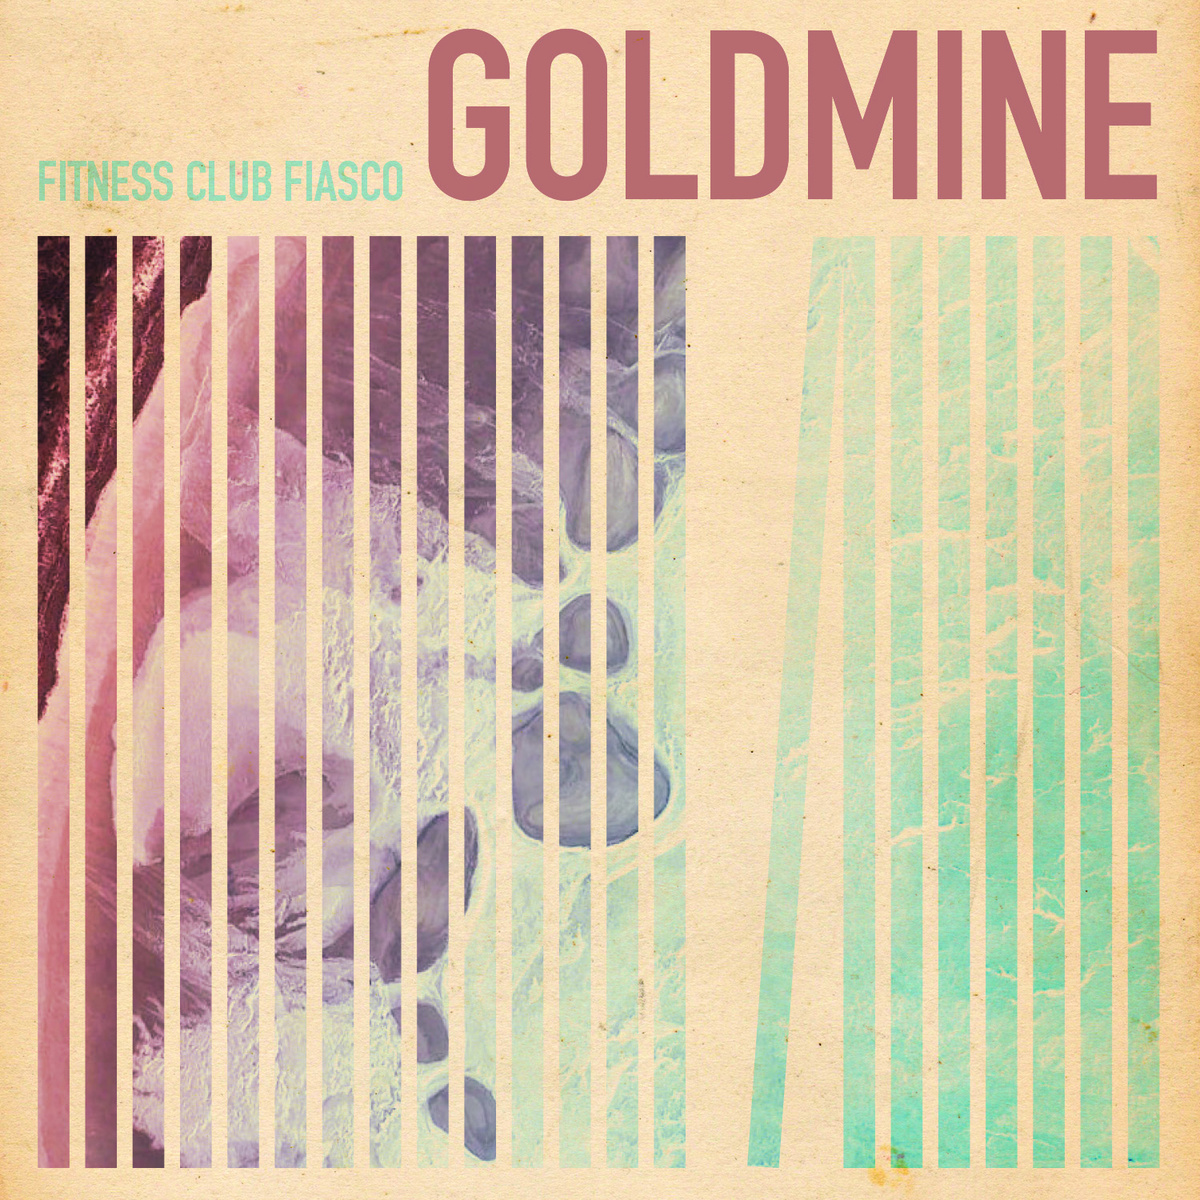 Fitness Club Fiasco - Goldmine